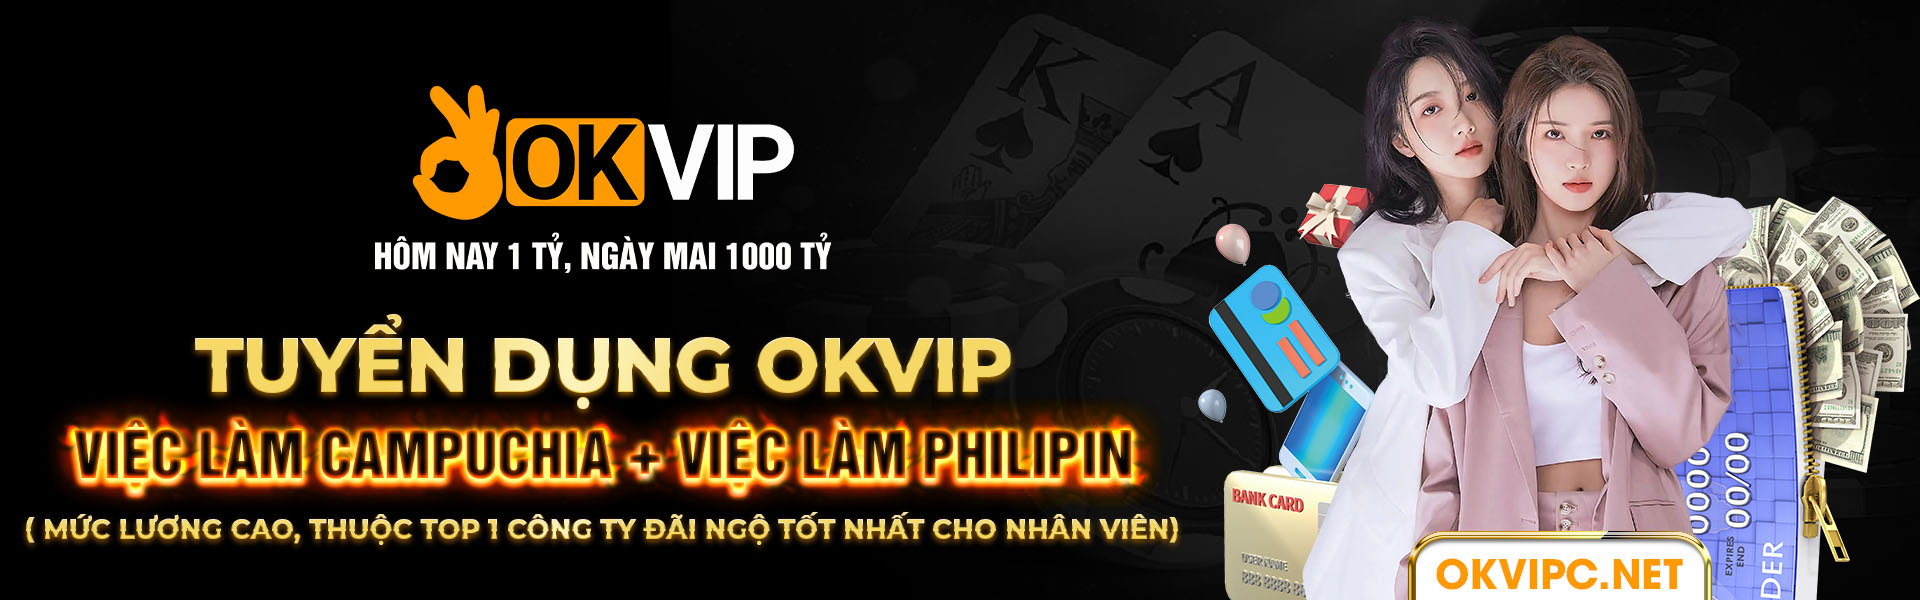 Tuyển dụng OKVIP - Việc làm Campuchia + Việc làm Philipin